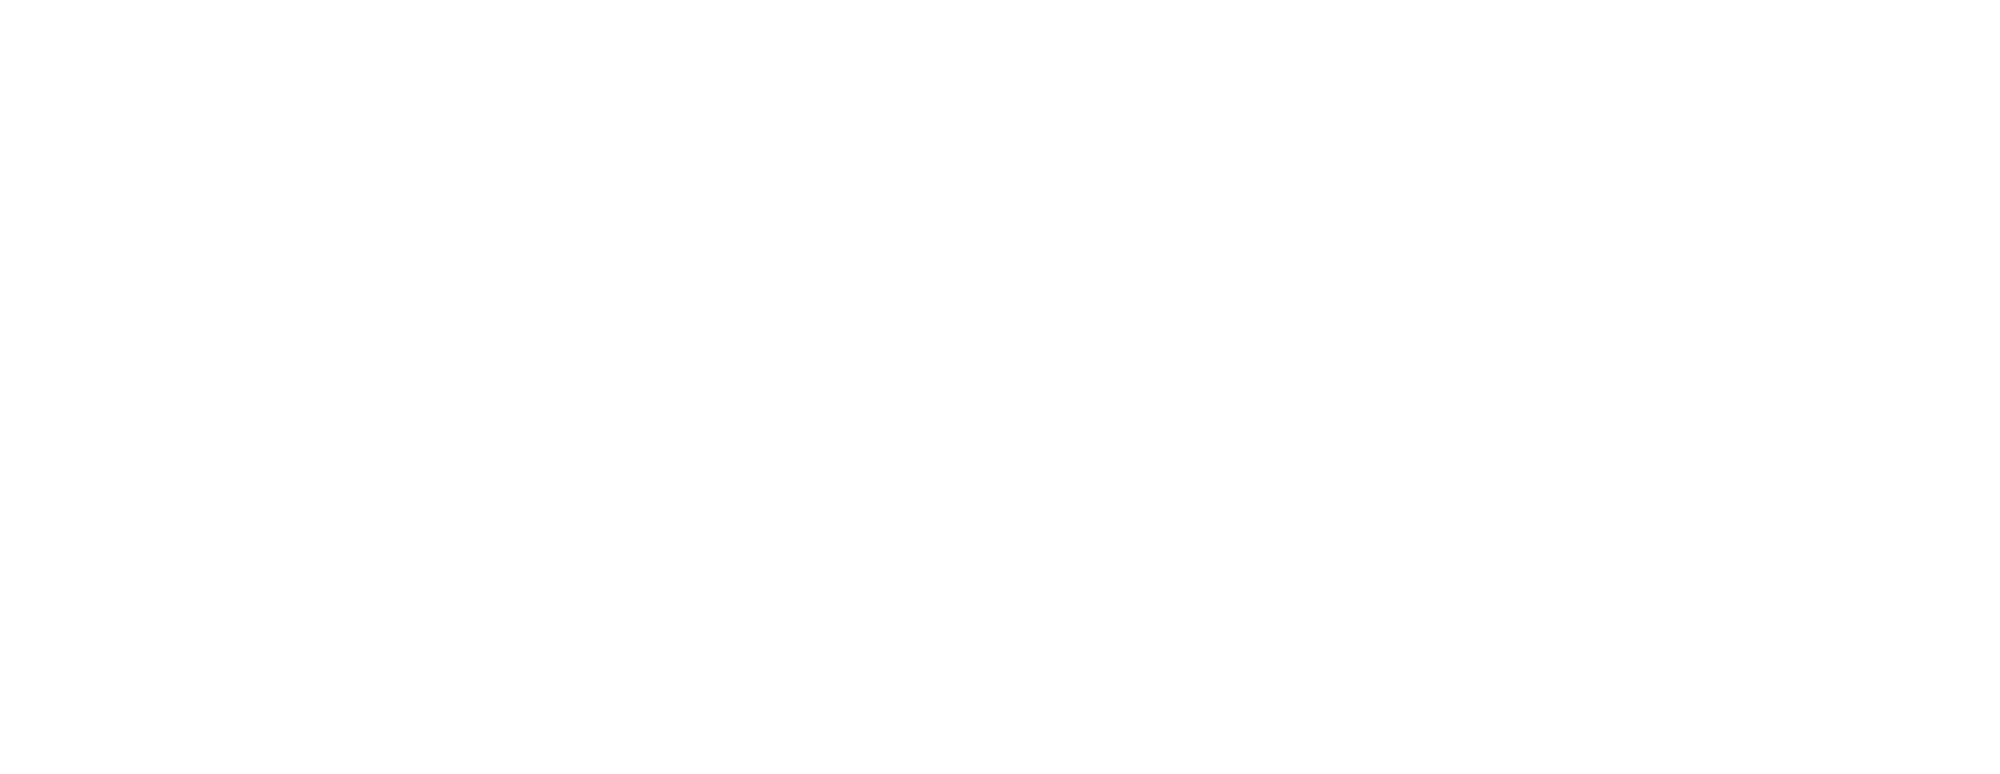 Fetchrev-white-dog